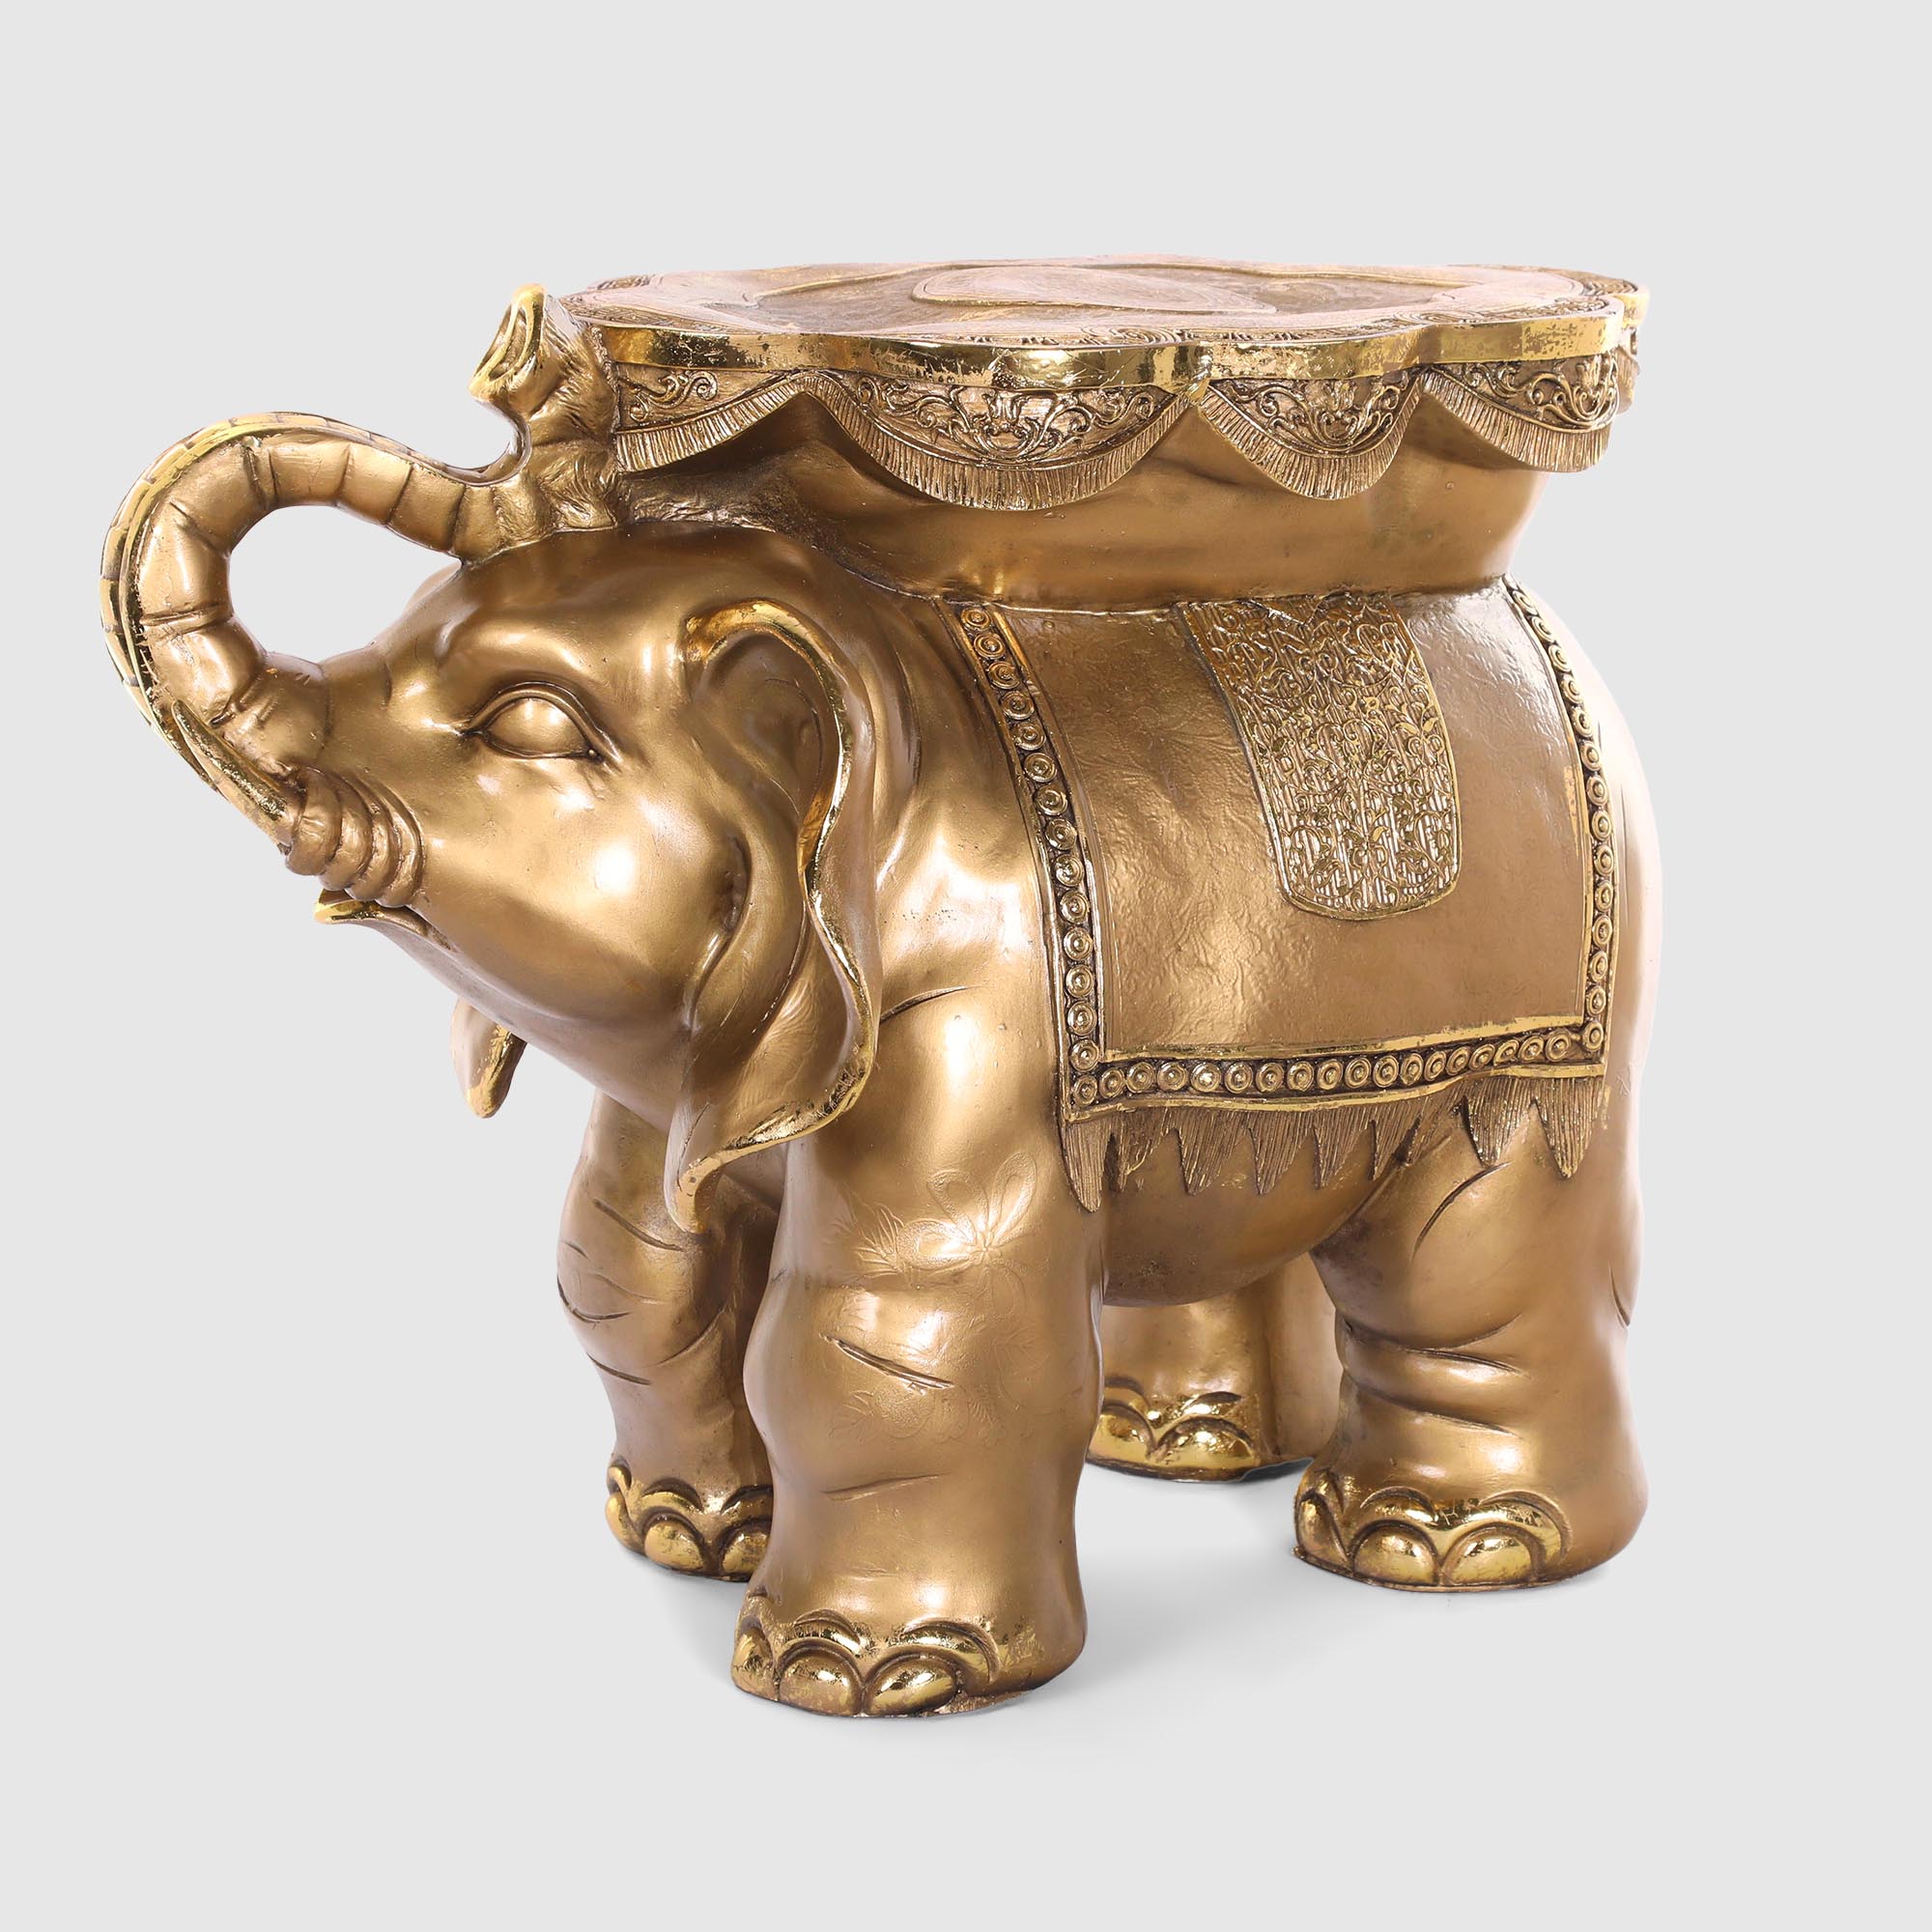 сувенир полистоун подсвечник зеркальные вставки индийский слон на камне 12 5х6 5х3 см Декоративная фигура Тпк полиформ Слон-стол бронзовый